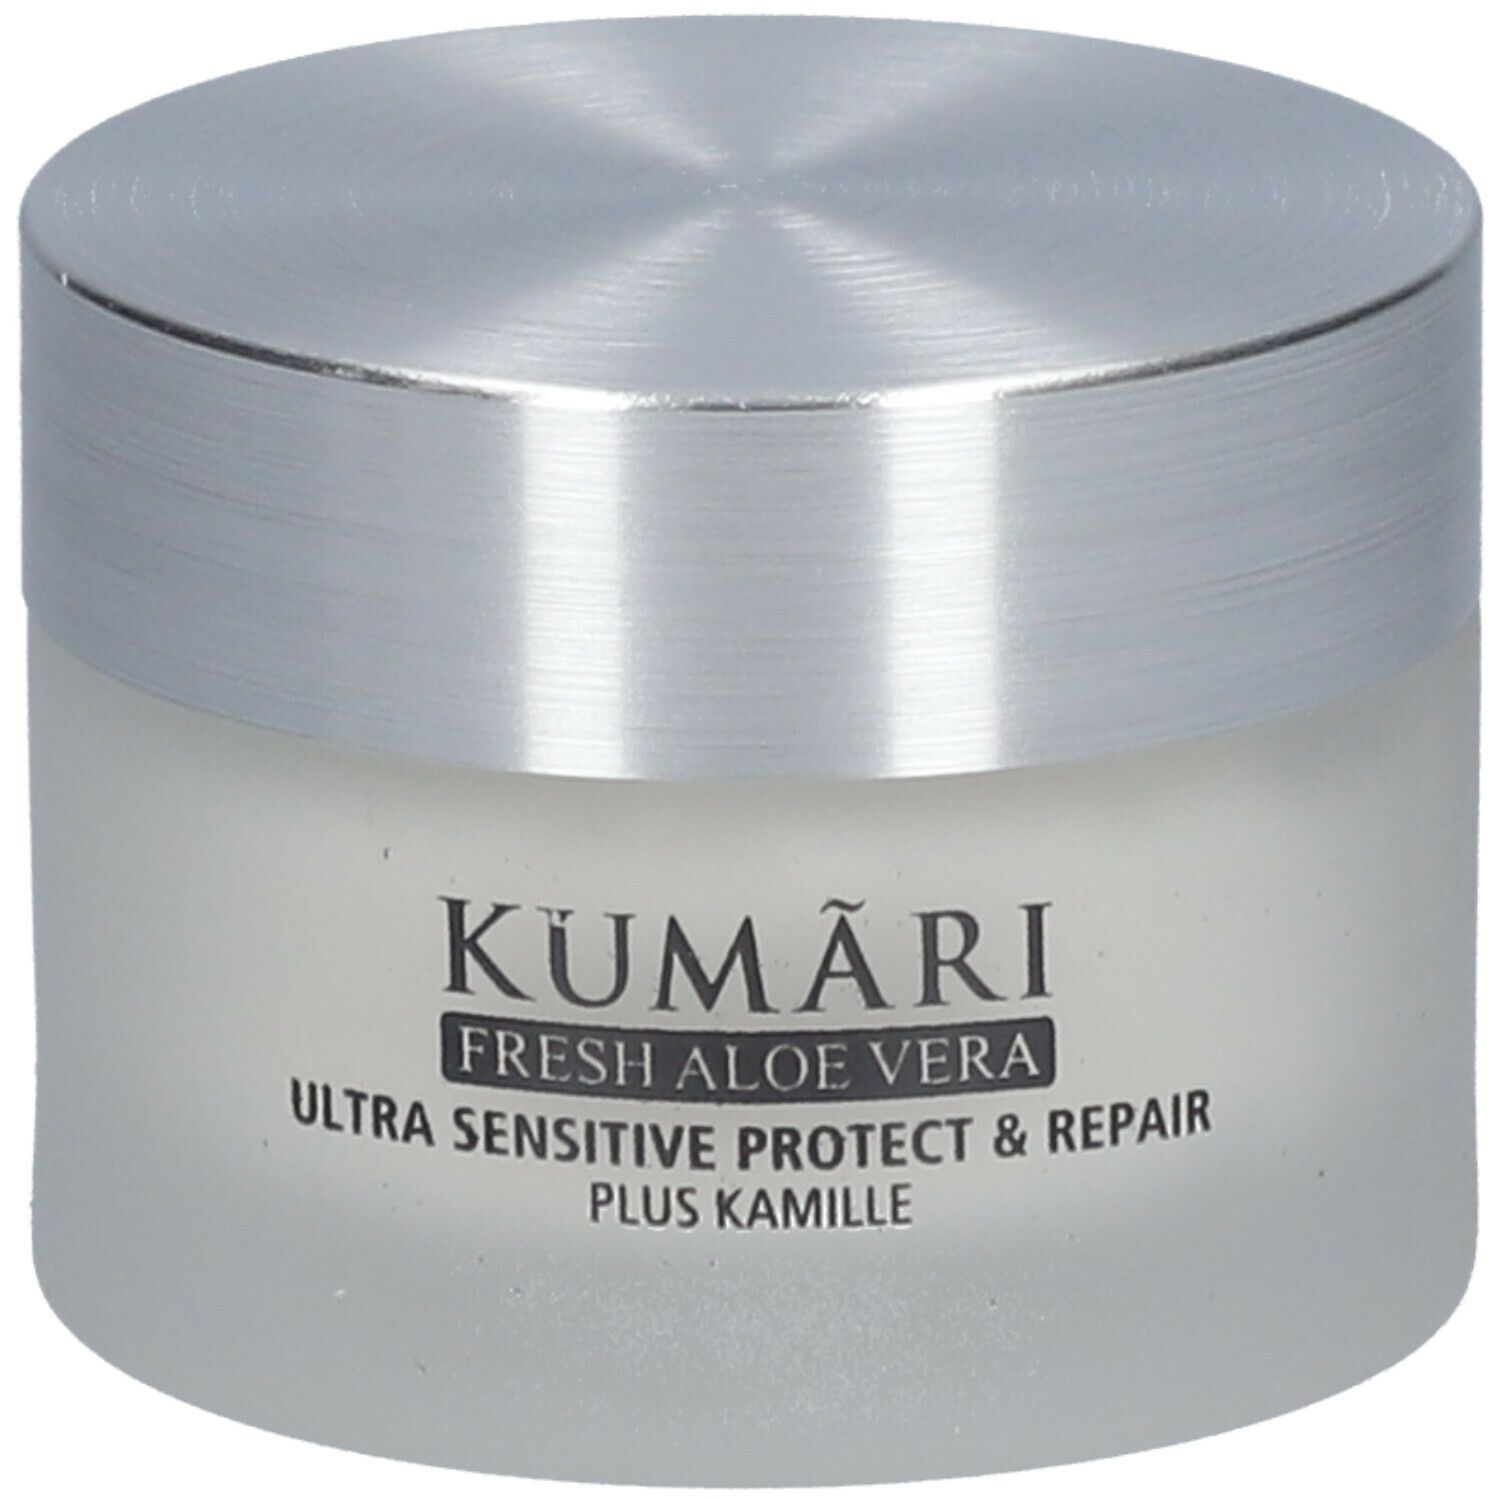 Kumari Ultra Sensitive Protect & Repair Cream